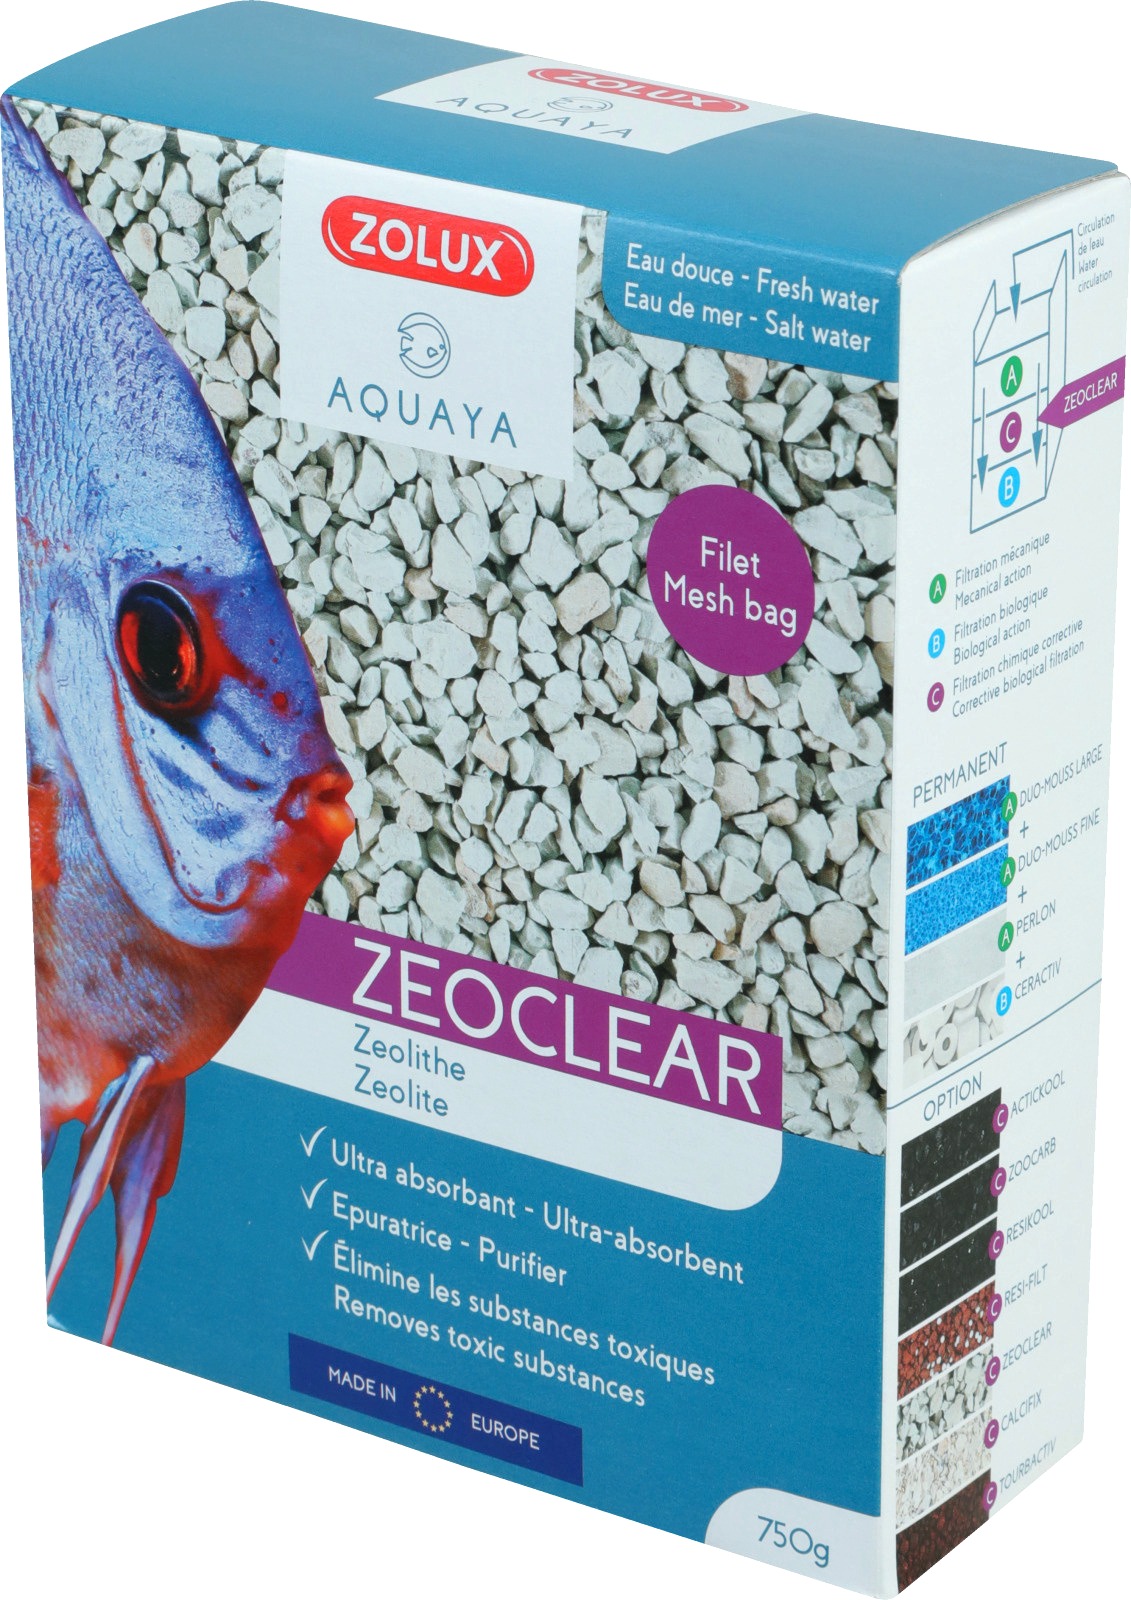 ZOLUX ZeoClear 1L Zeolite de filtration minéral et dépolluante pour eau douce et eau de mer